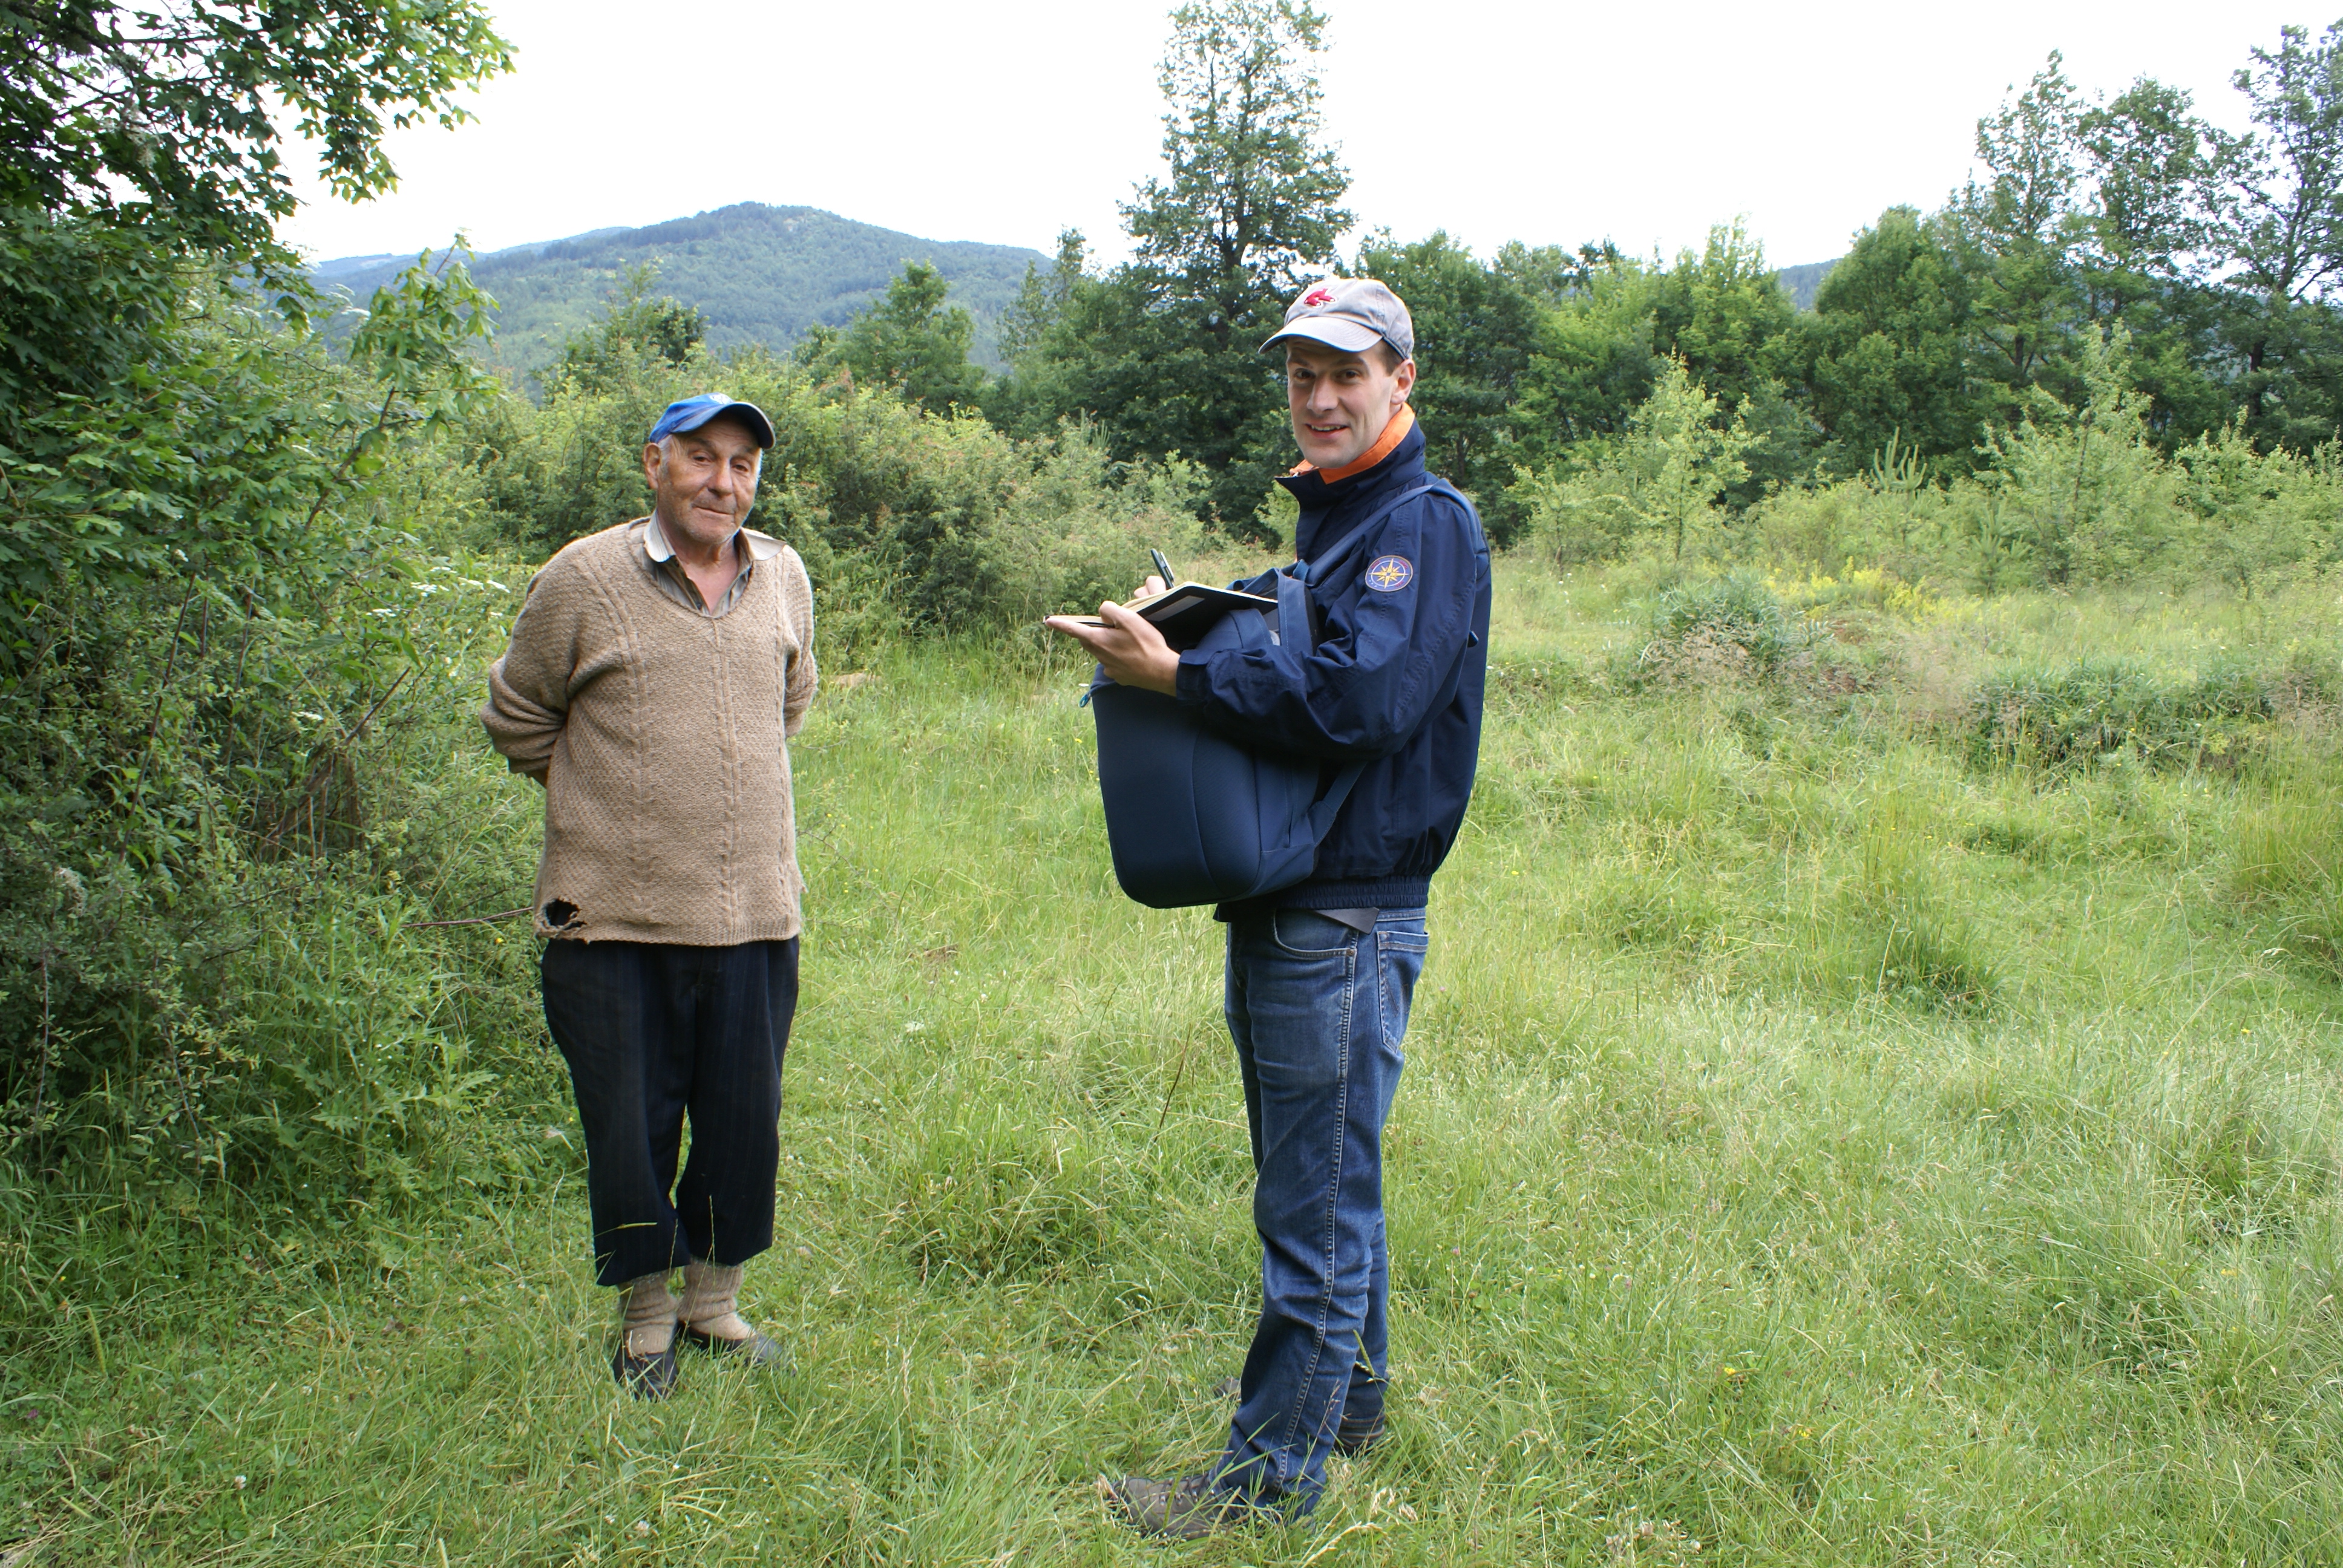 Erkundigung bei einem bulgarischen Landwirt, Bulgarien, 2010